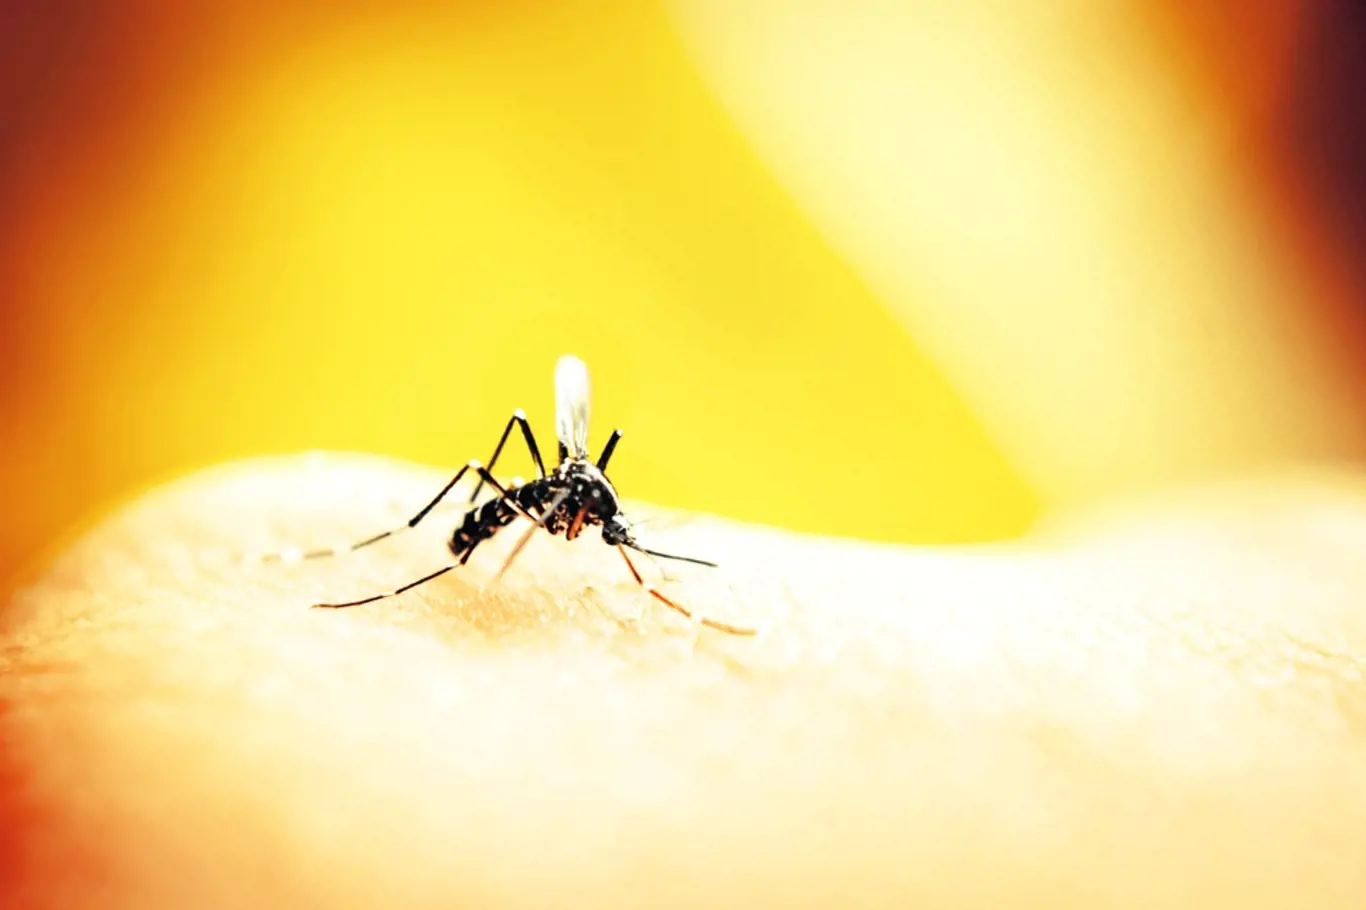 Stravování komárů podle krevních skupin